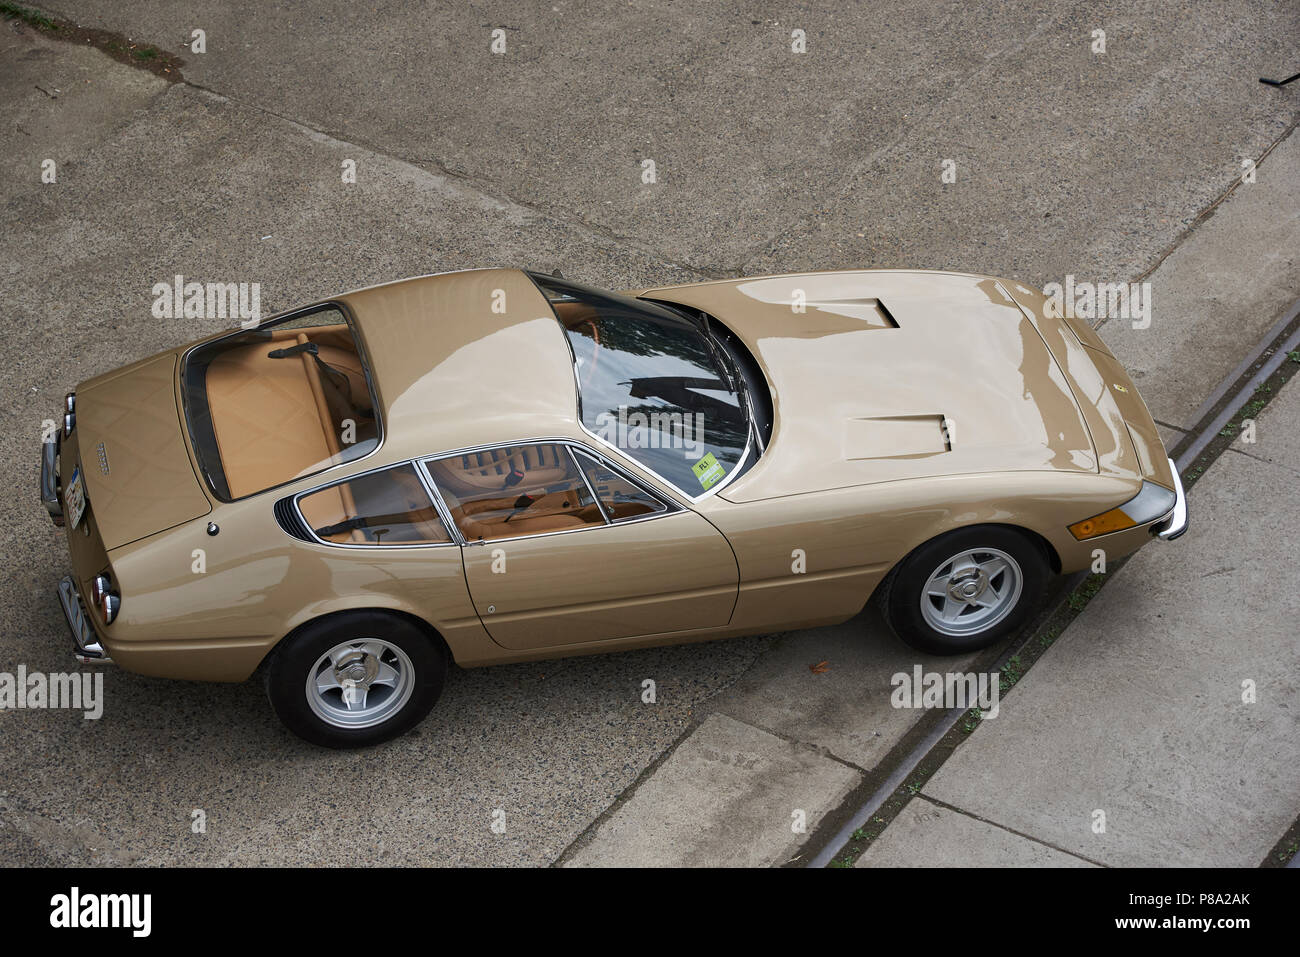 Ferrari 365 immagini e fotografie stock ad alta risoluzione - Alamy